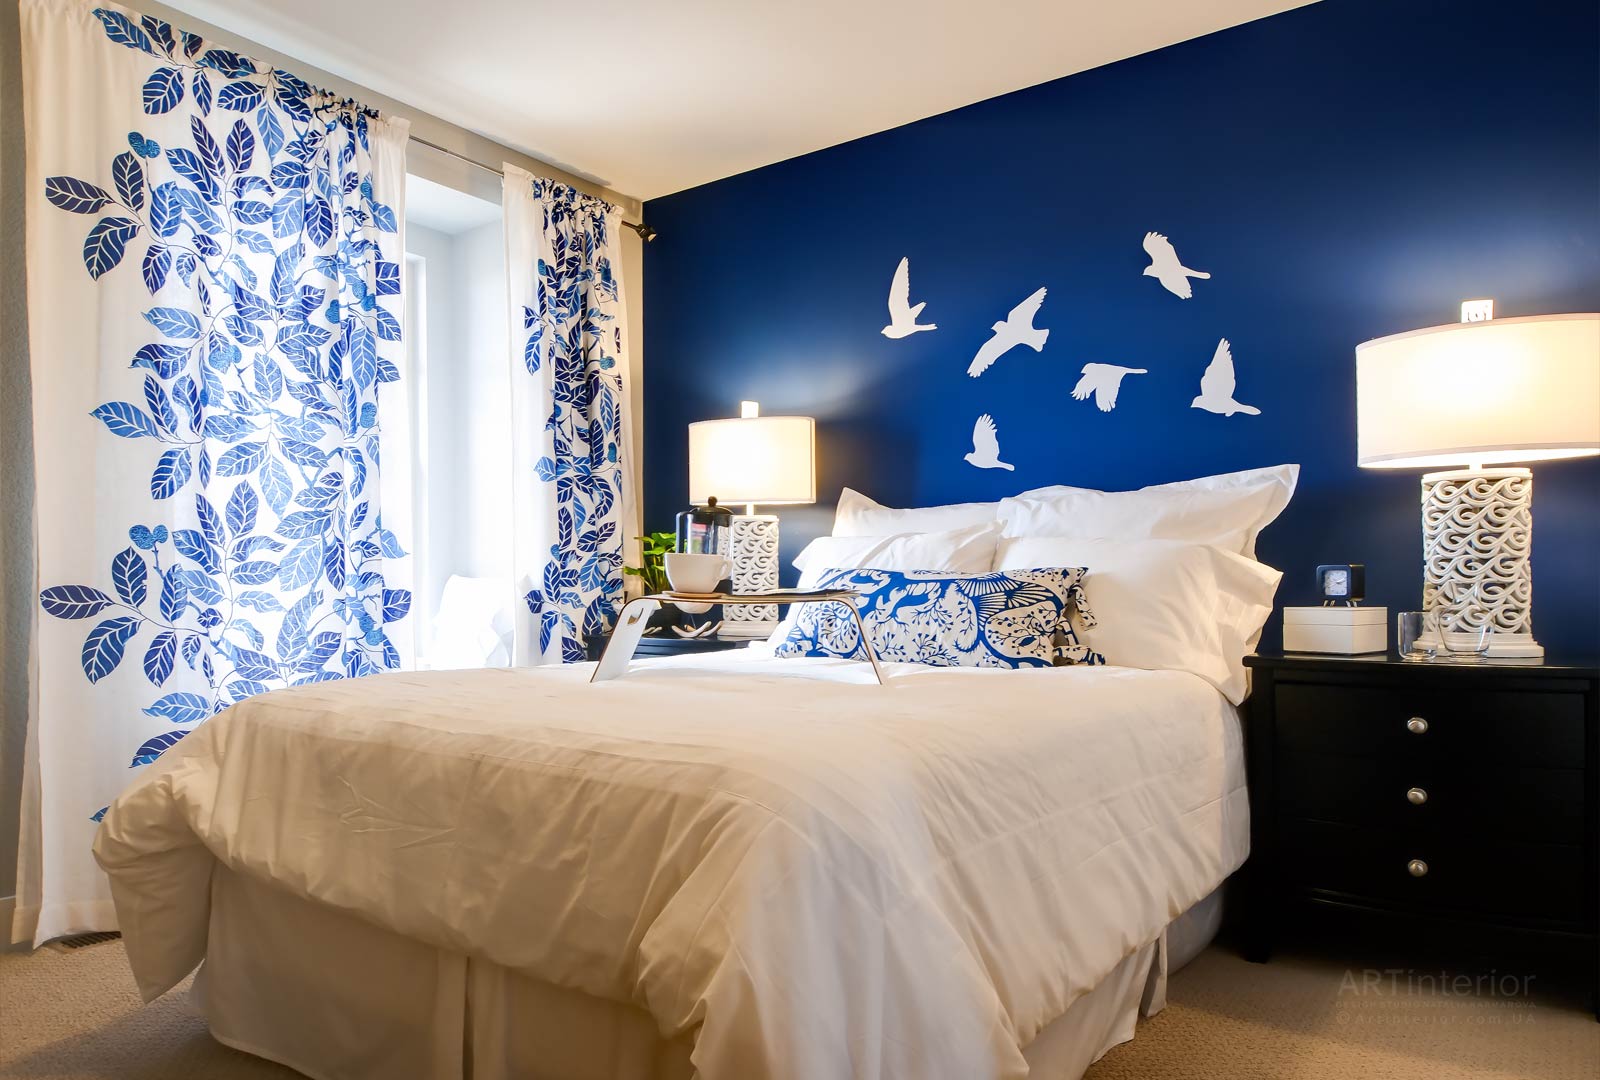 غرفة نوم في الصورة ديكور الأزرق